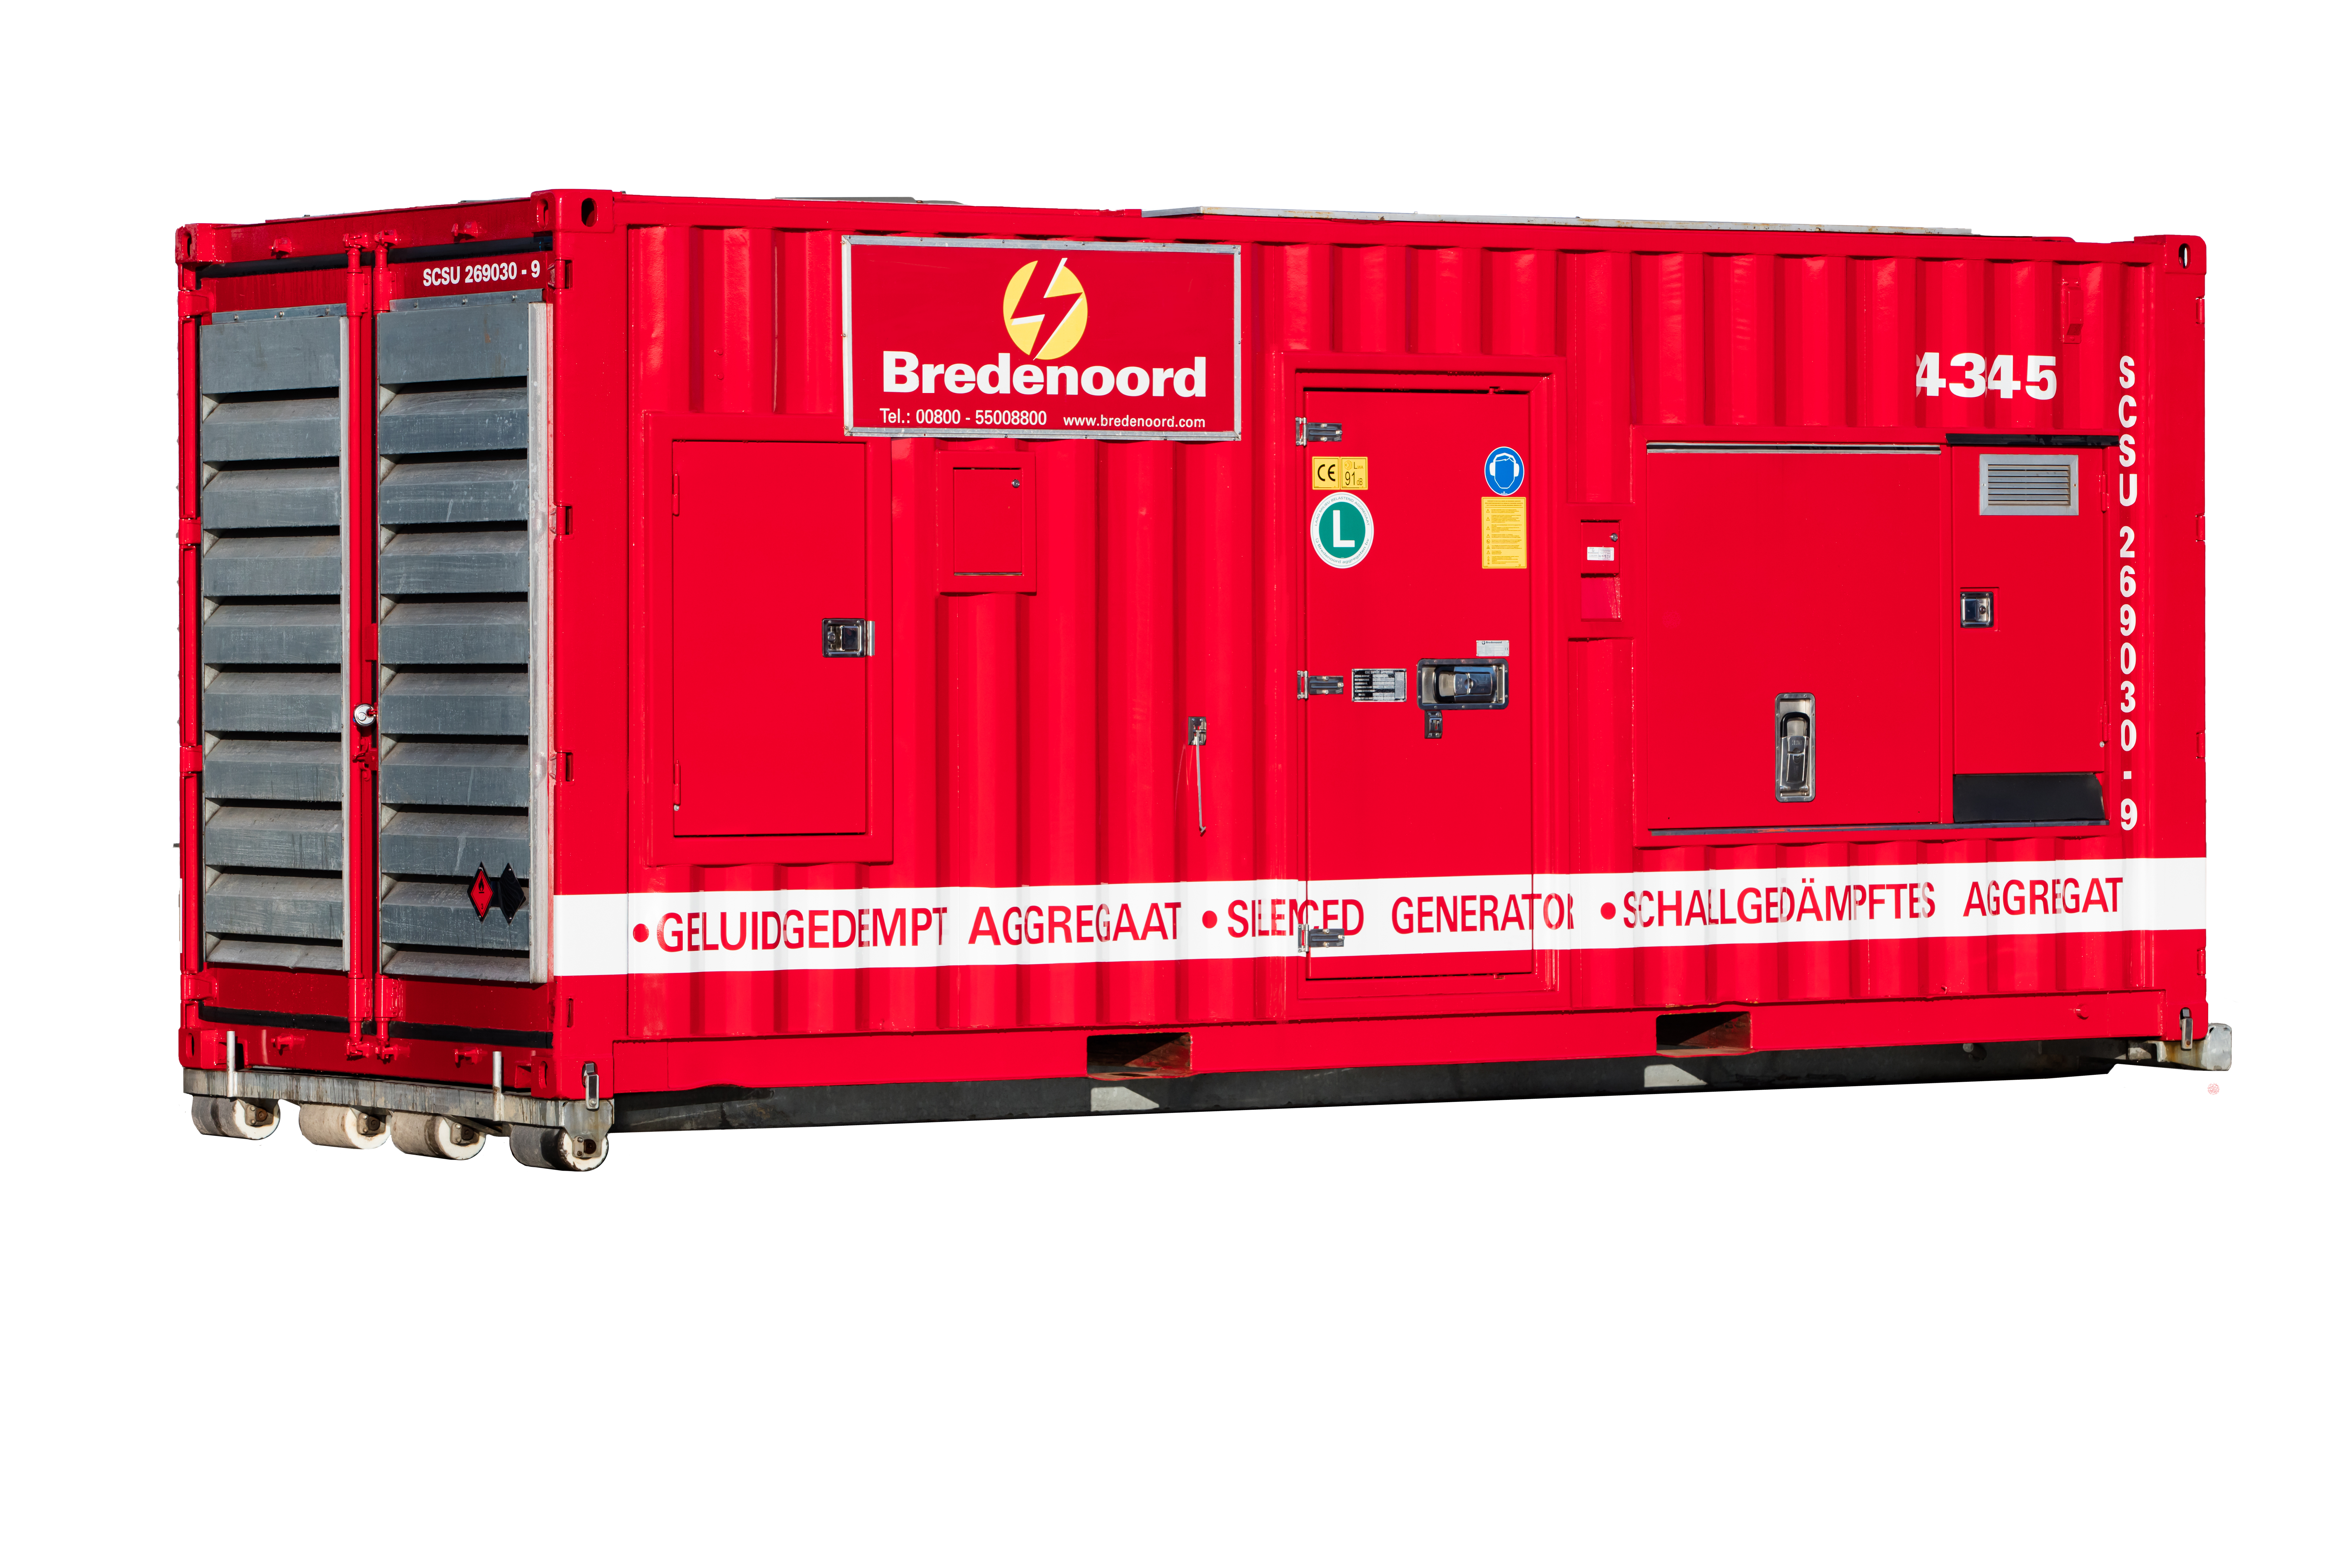 1250 kVA Stromaggregat der Fa. Bredenoord. Das mobile Containeraggregat soll zukünftig bei der Notstromversorgung des Max Bögl-Industrienetzes unterstützend wirken.